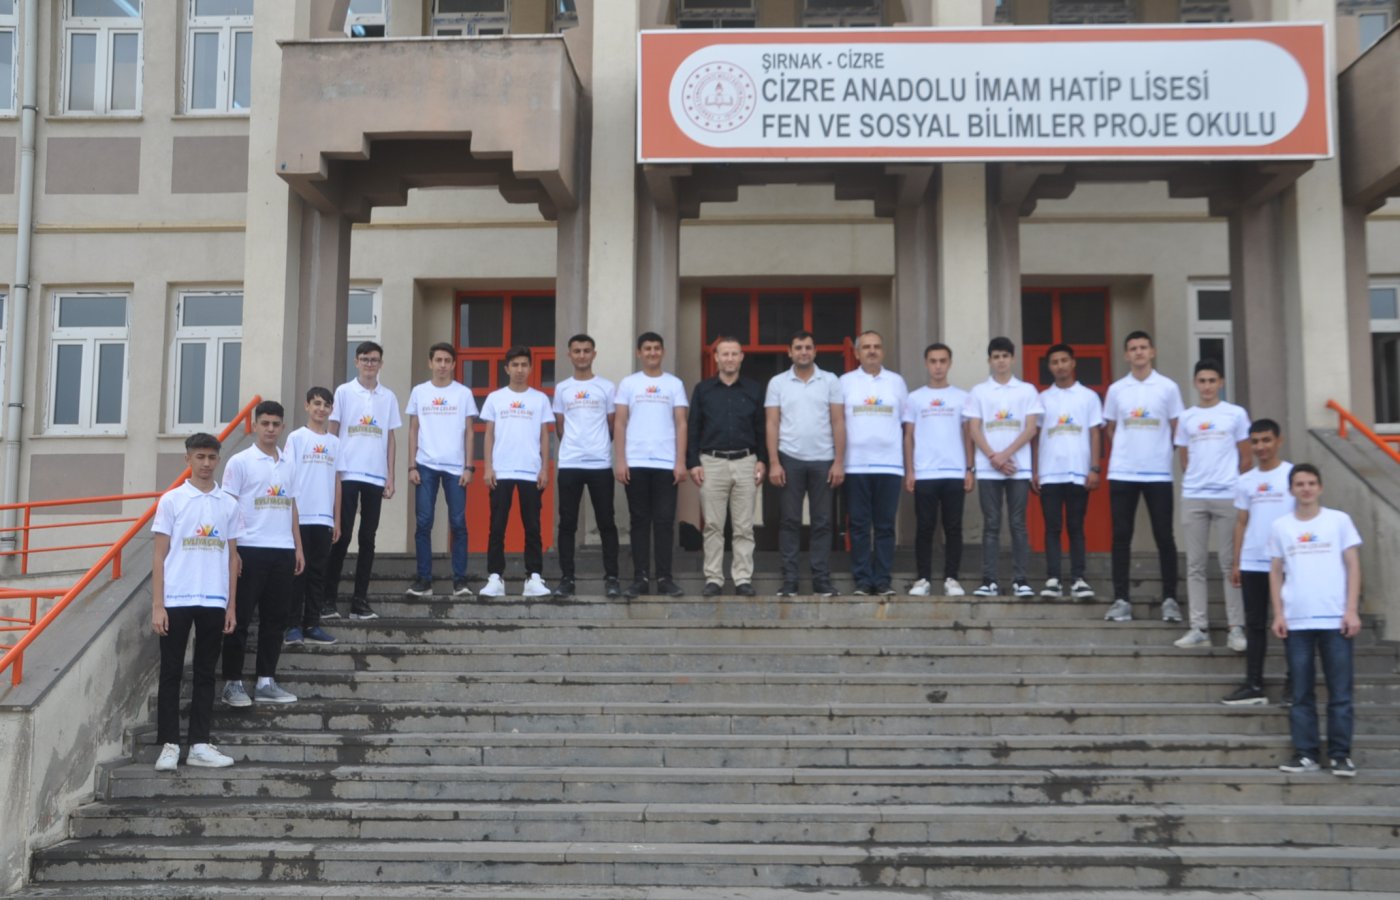 Edirneli Öğrenciler "Evliya Çelebi Öğrenci Değişim Projesi" ile Cizre’yi gezdi